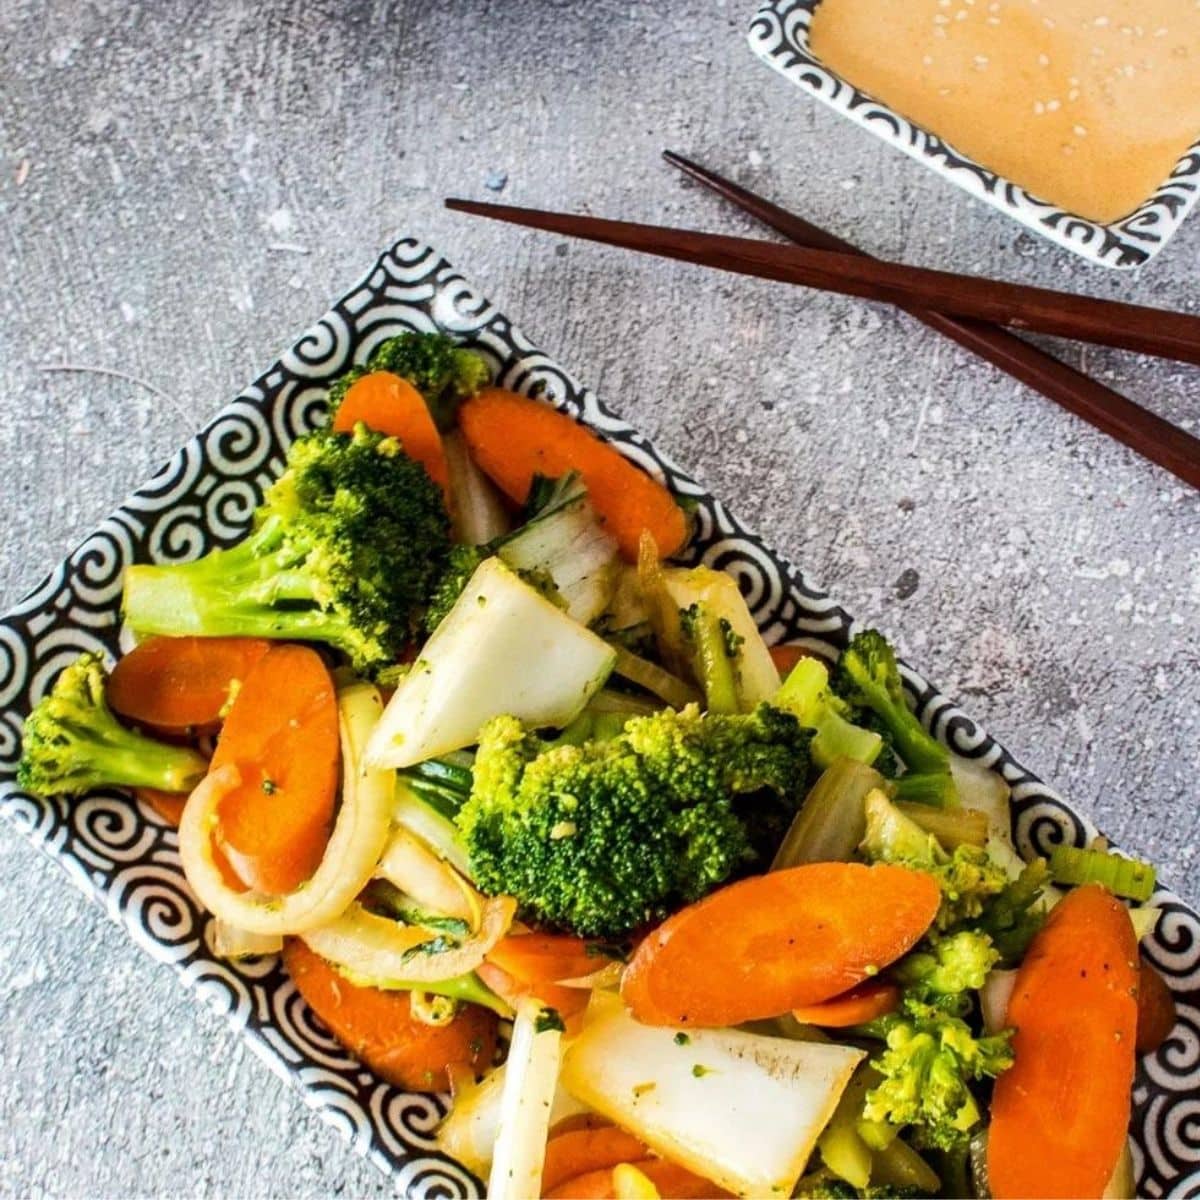 Квадратное изображение овощей хибачи на сером фоне с палочками для еды.